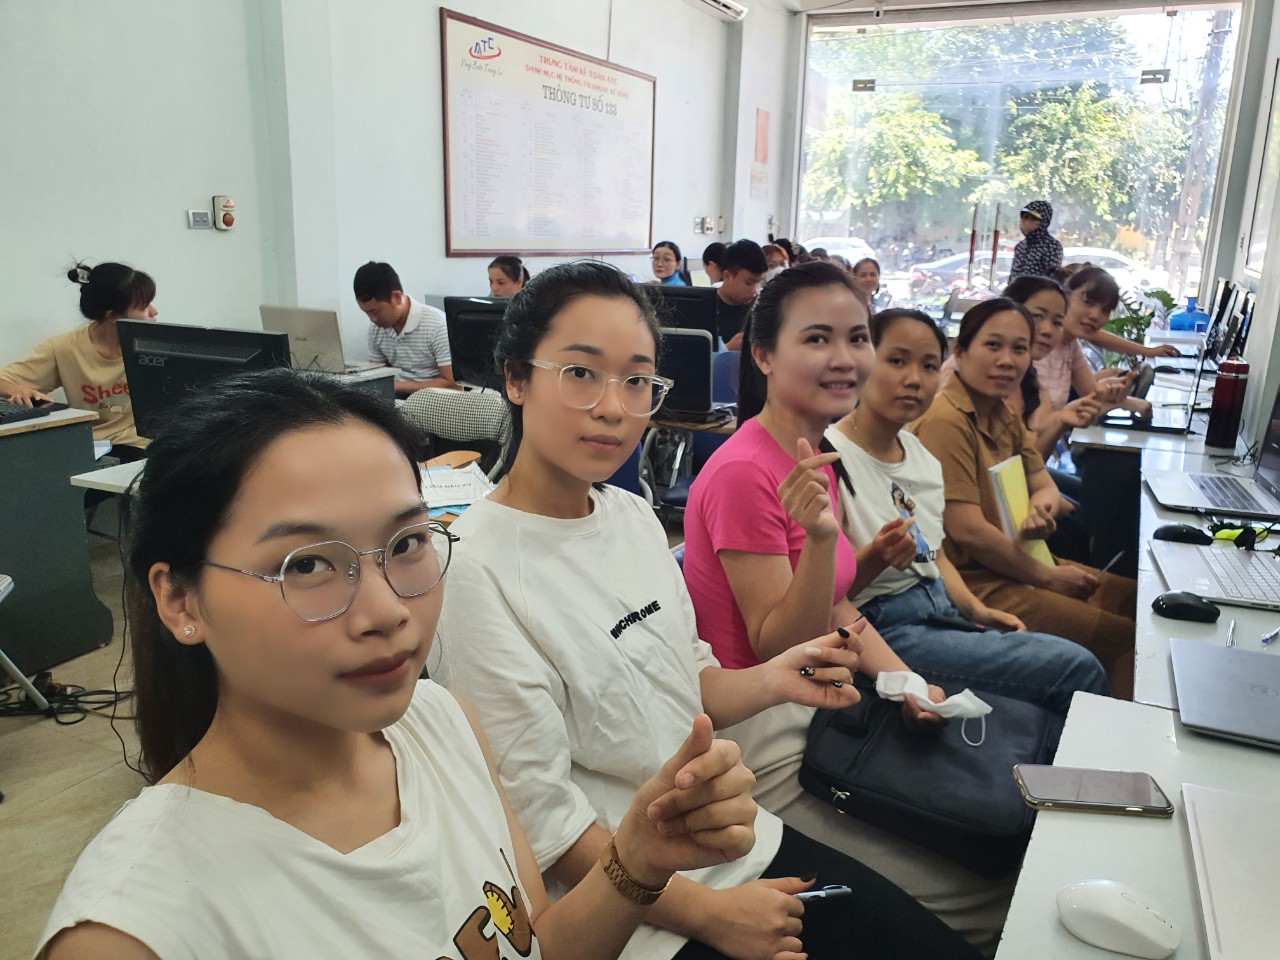 Trung tâm đào tạo kế toán tại Thanh Hóa 